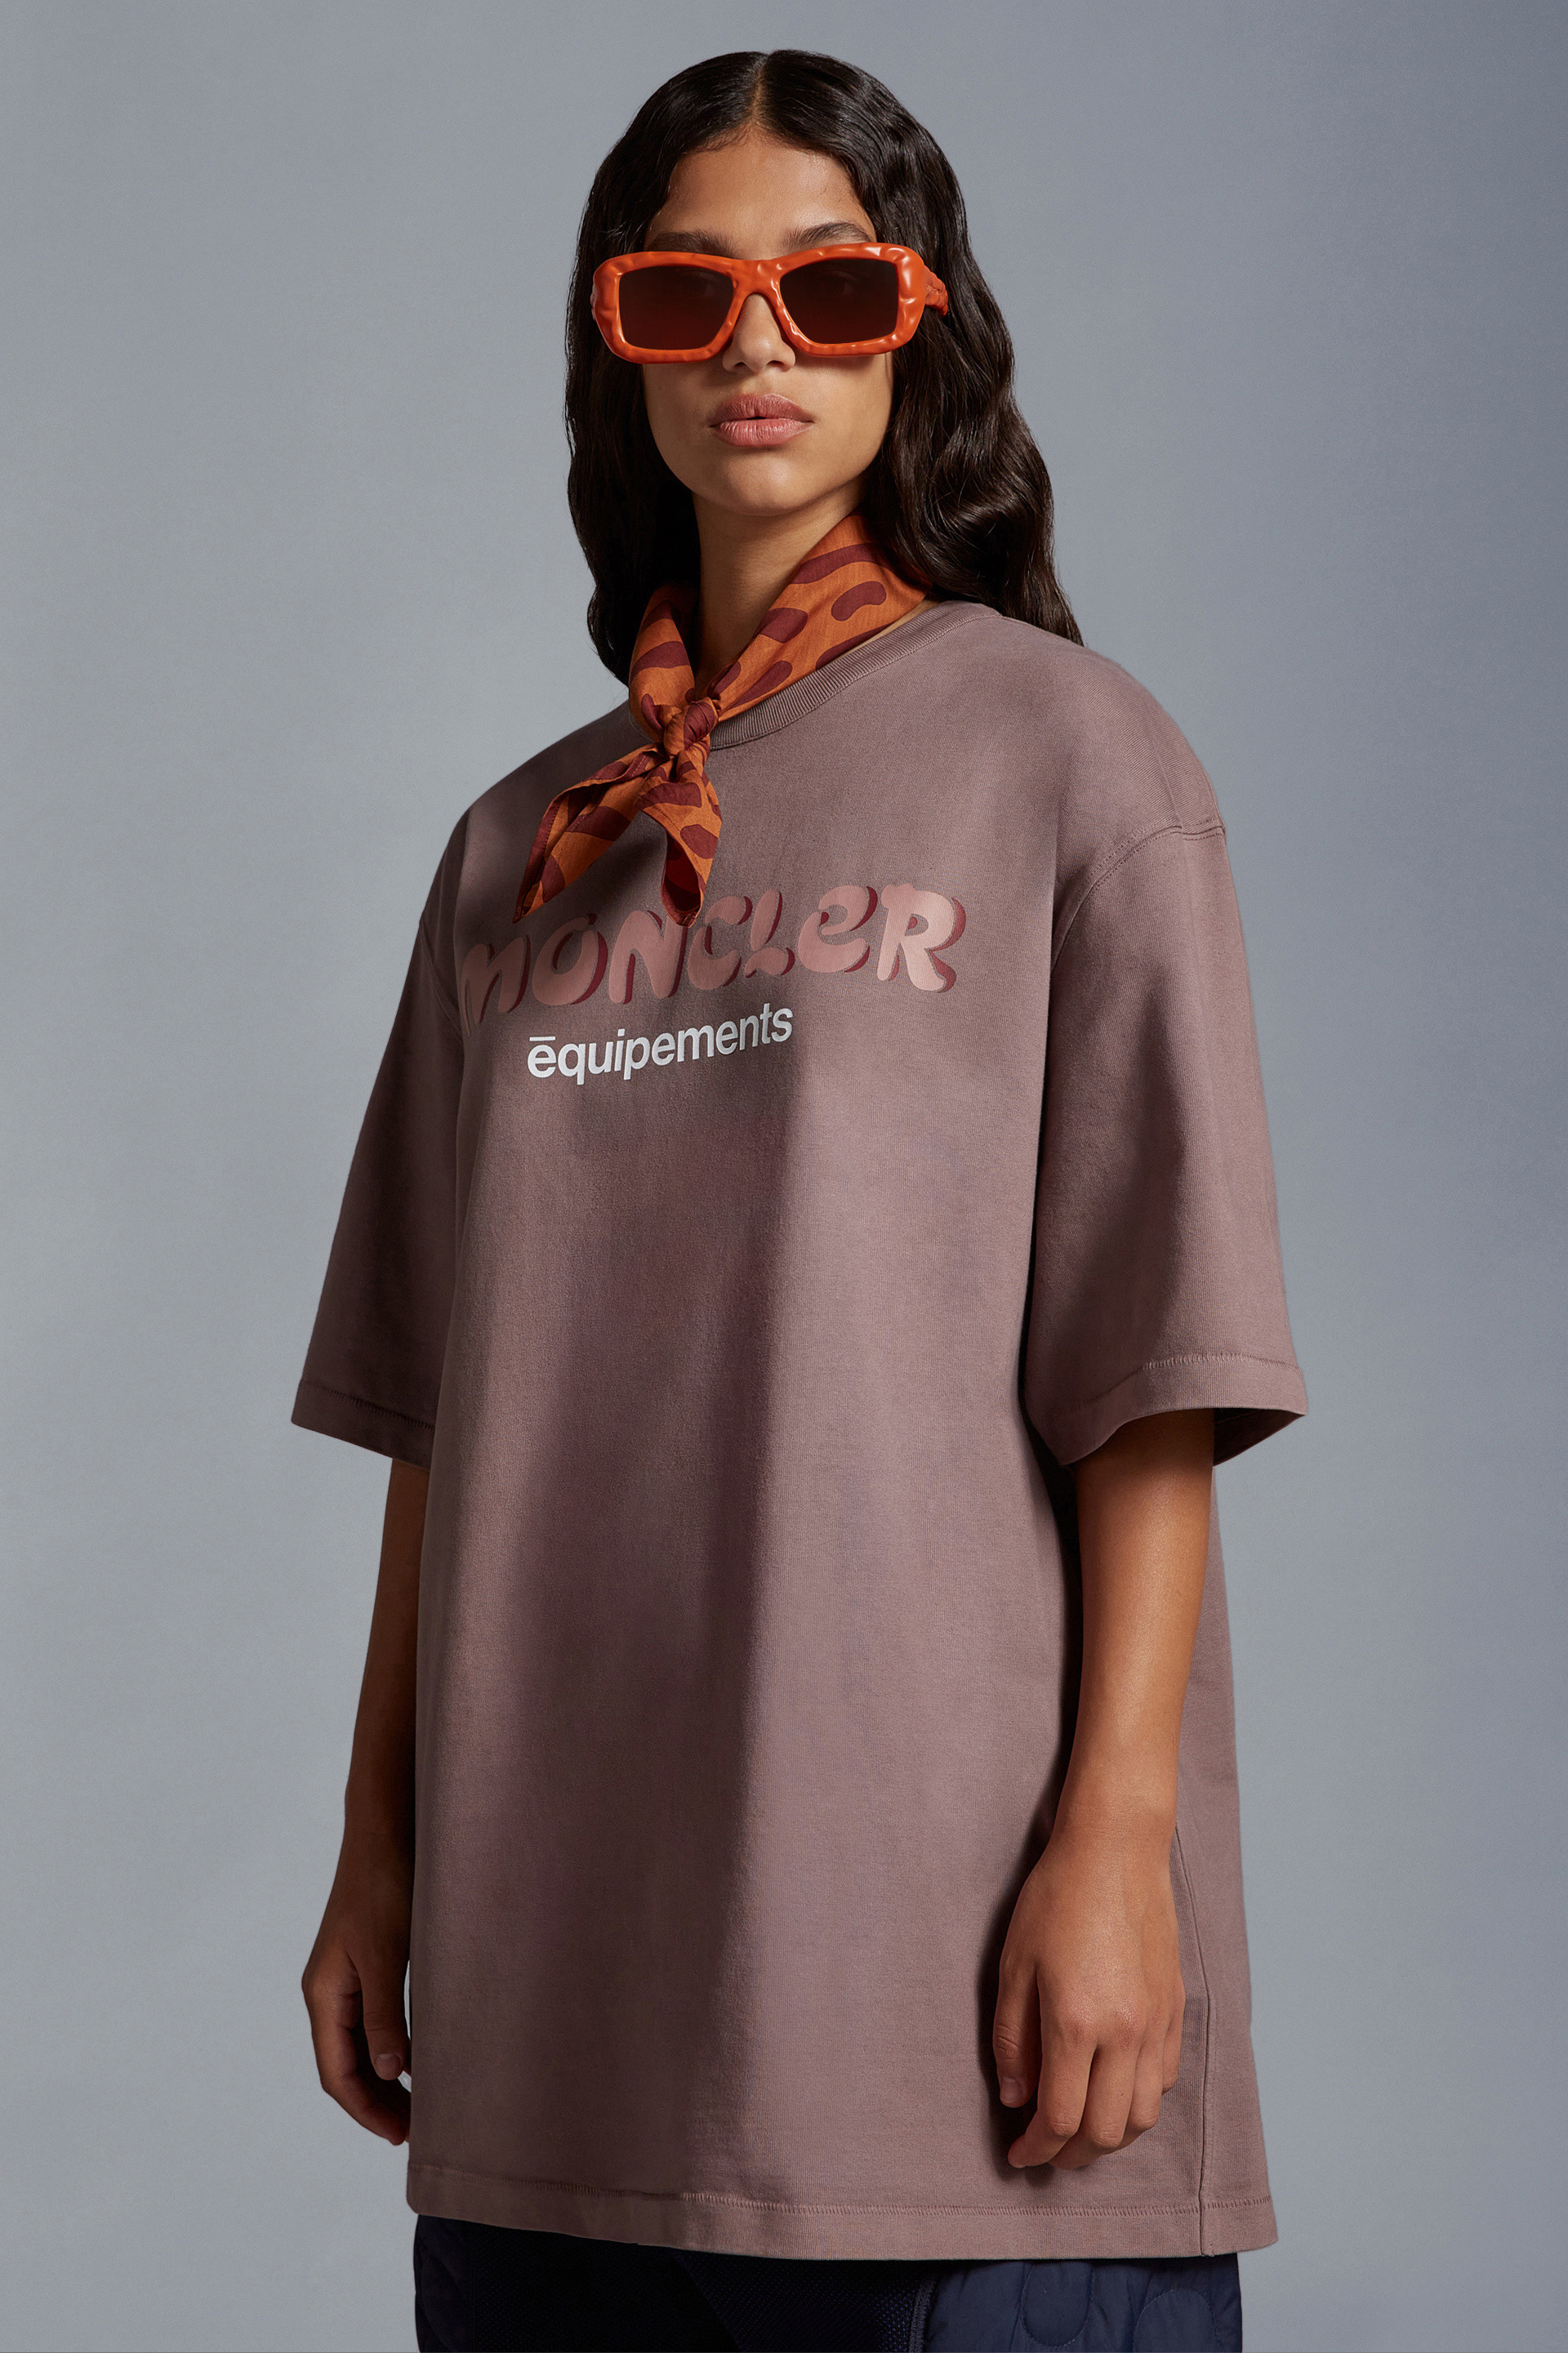 ライトピンク Tシャツ : Moncler x Salehe Bembury 向けの Genius